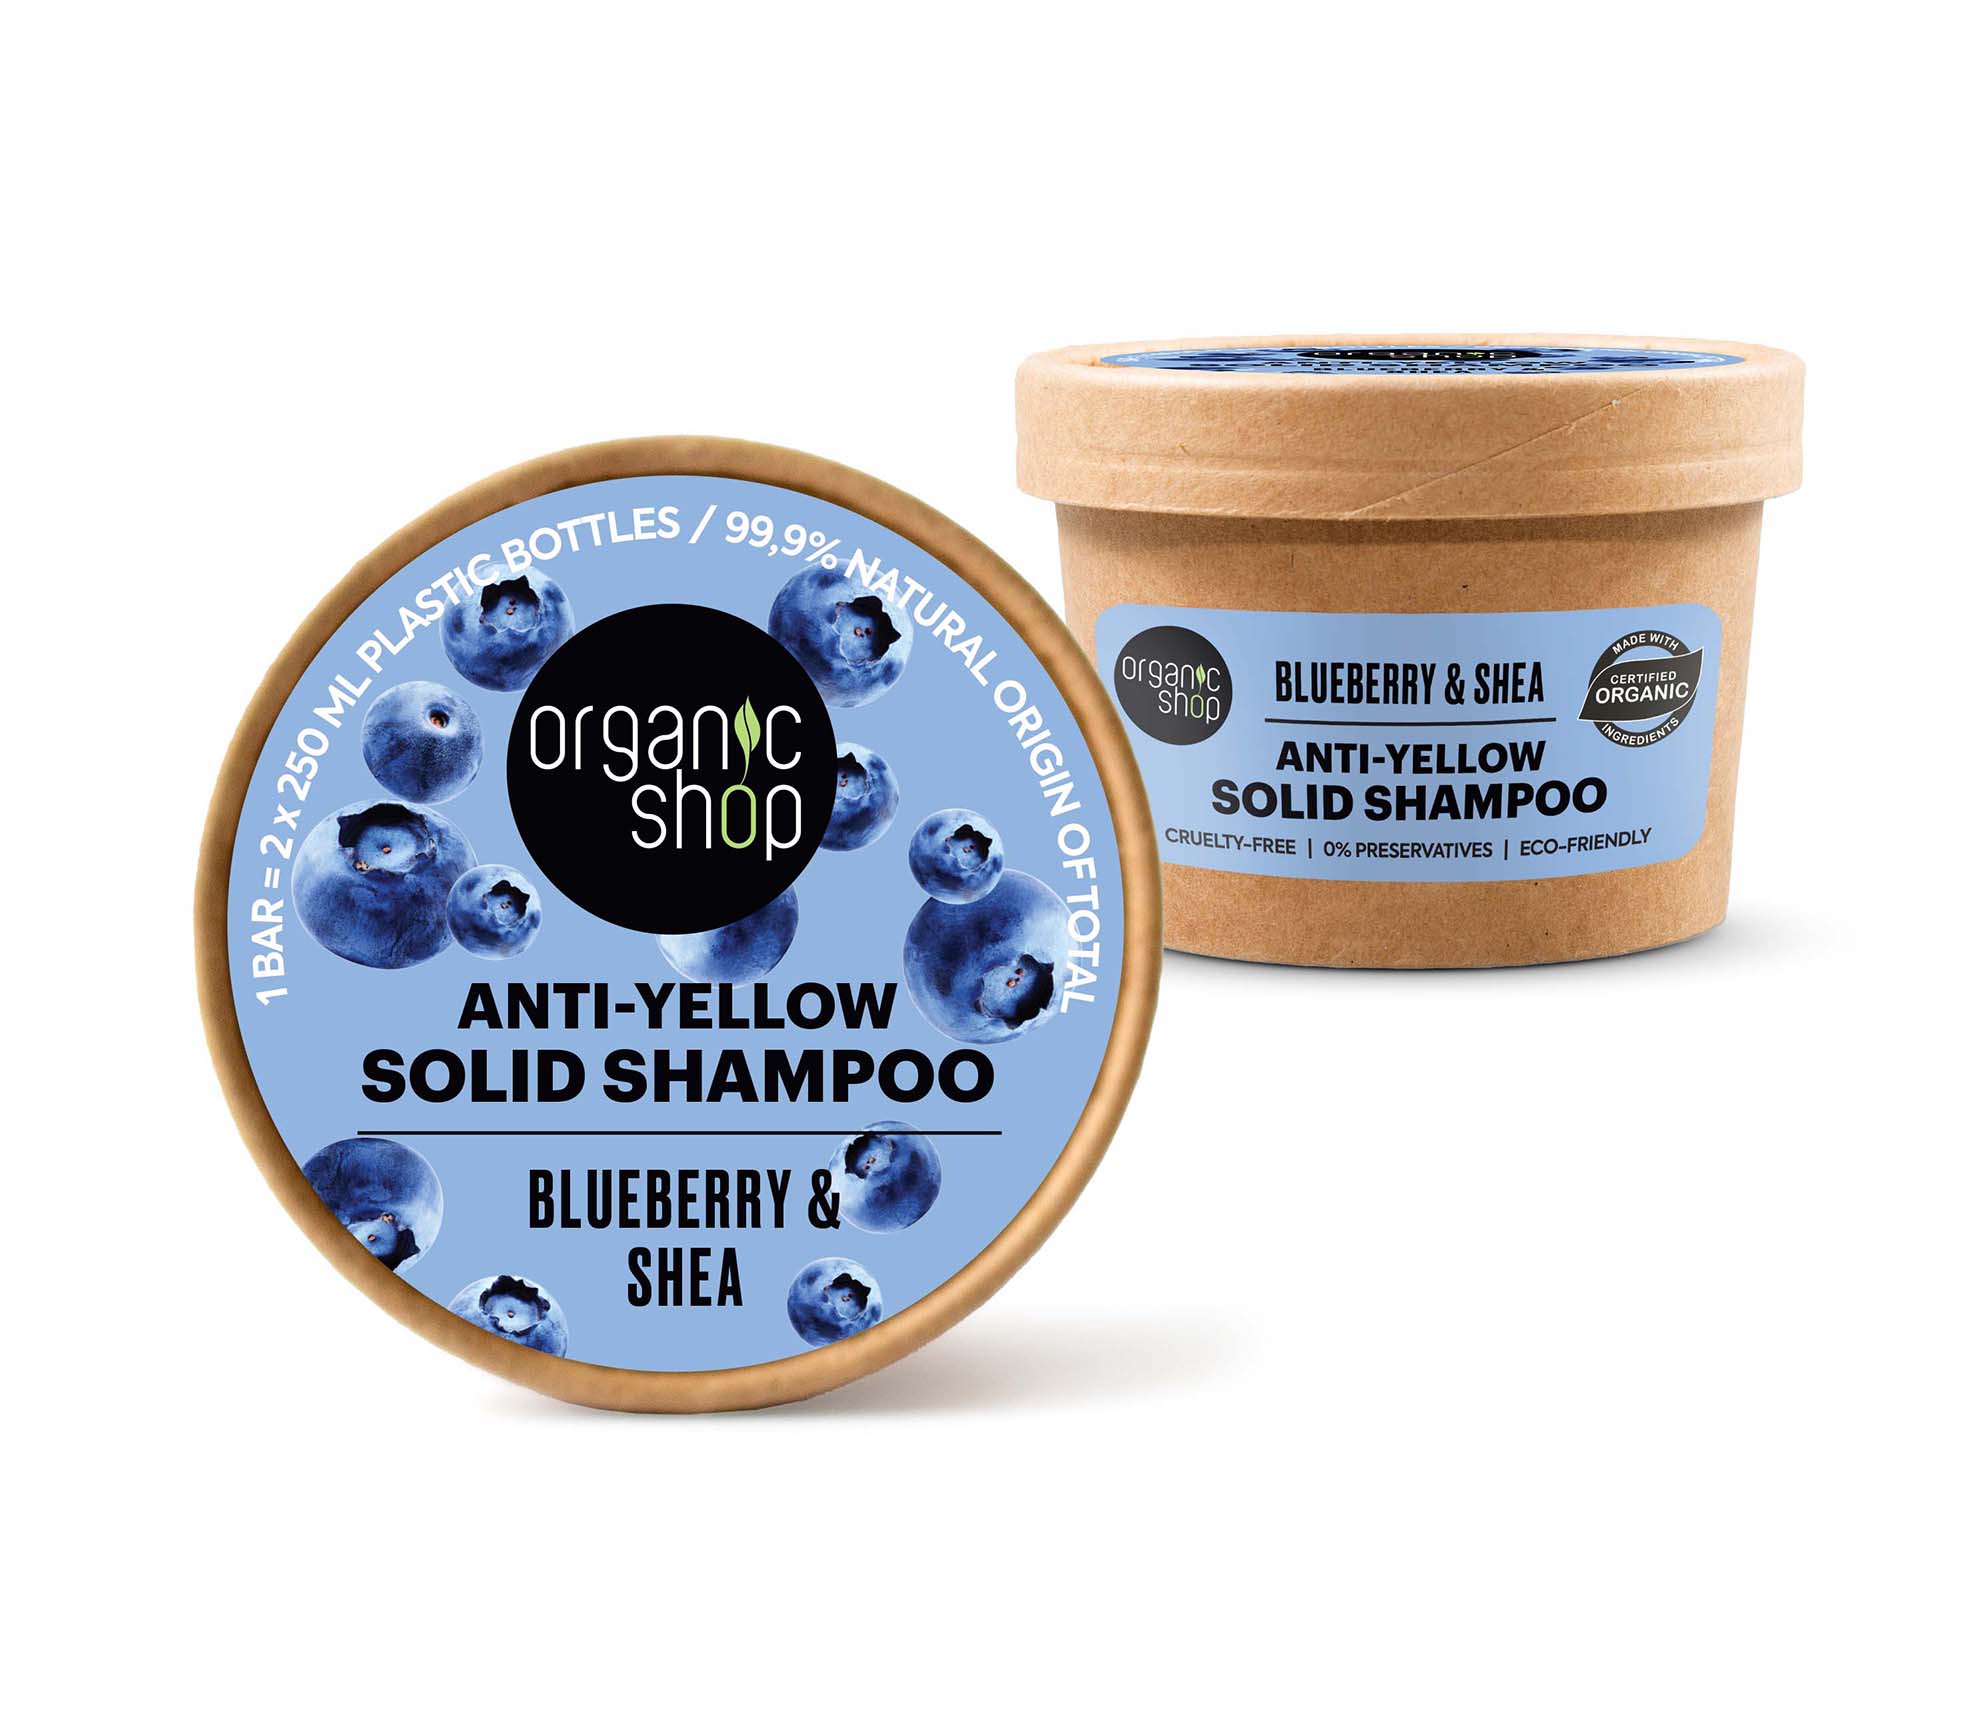 Anti-yellow shampoo. Blueberry & Shea